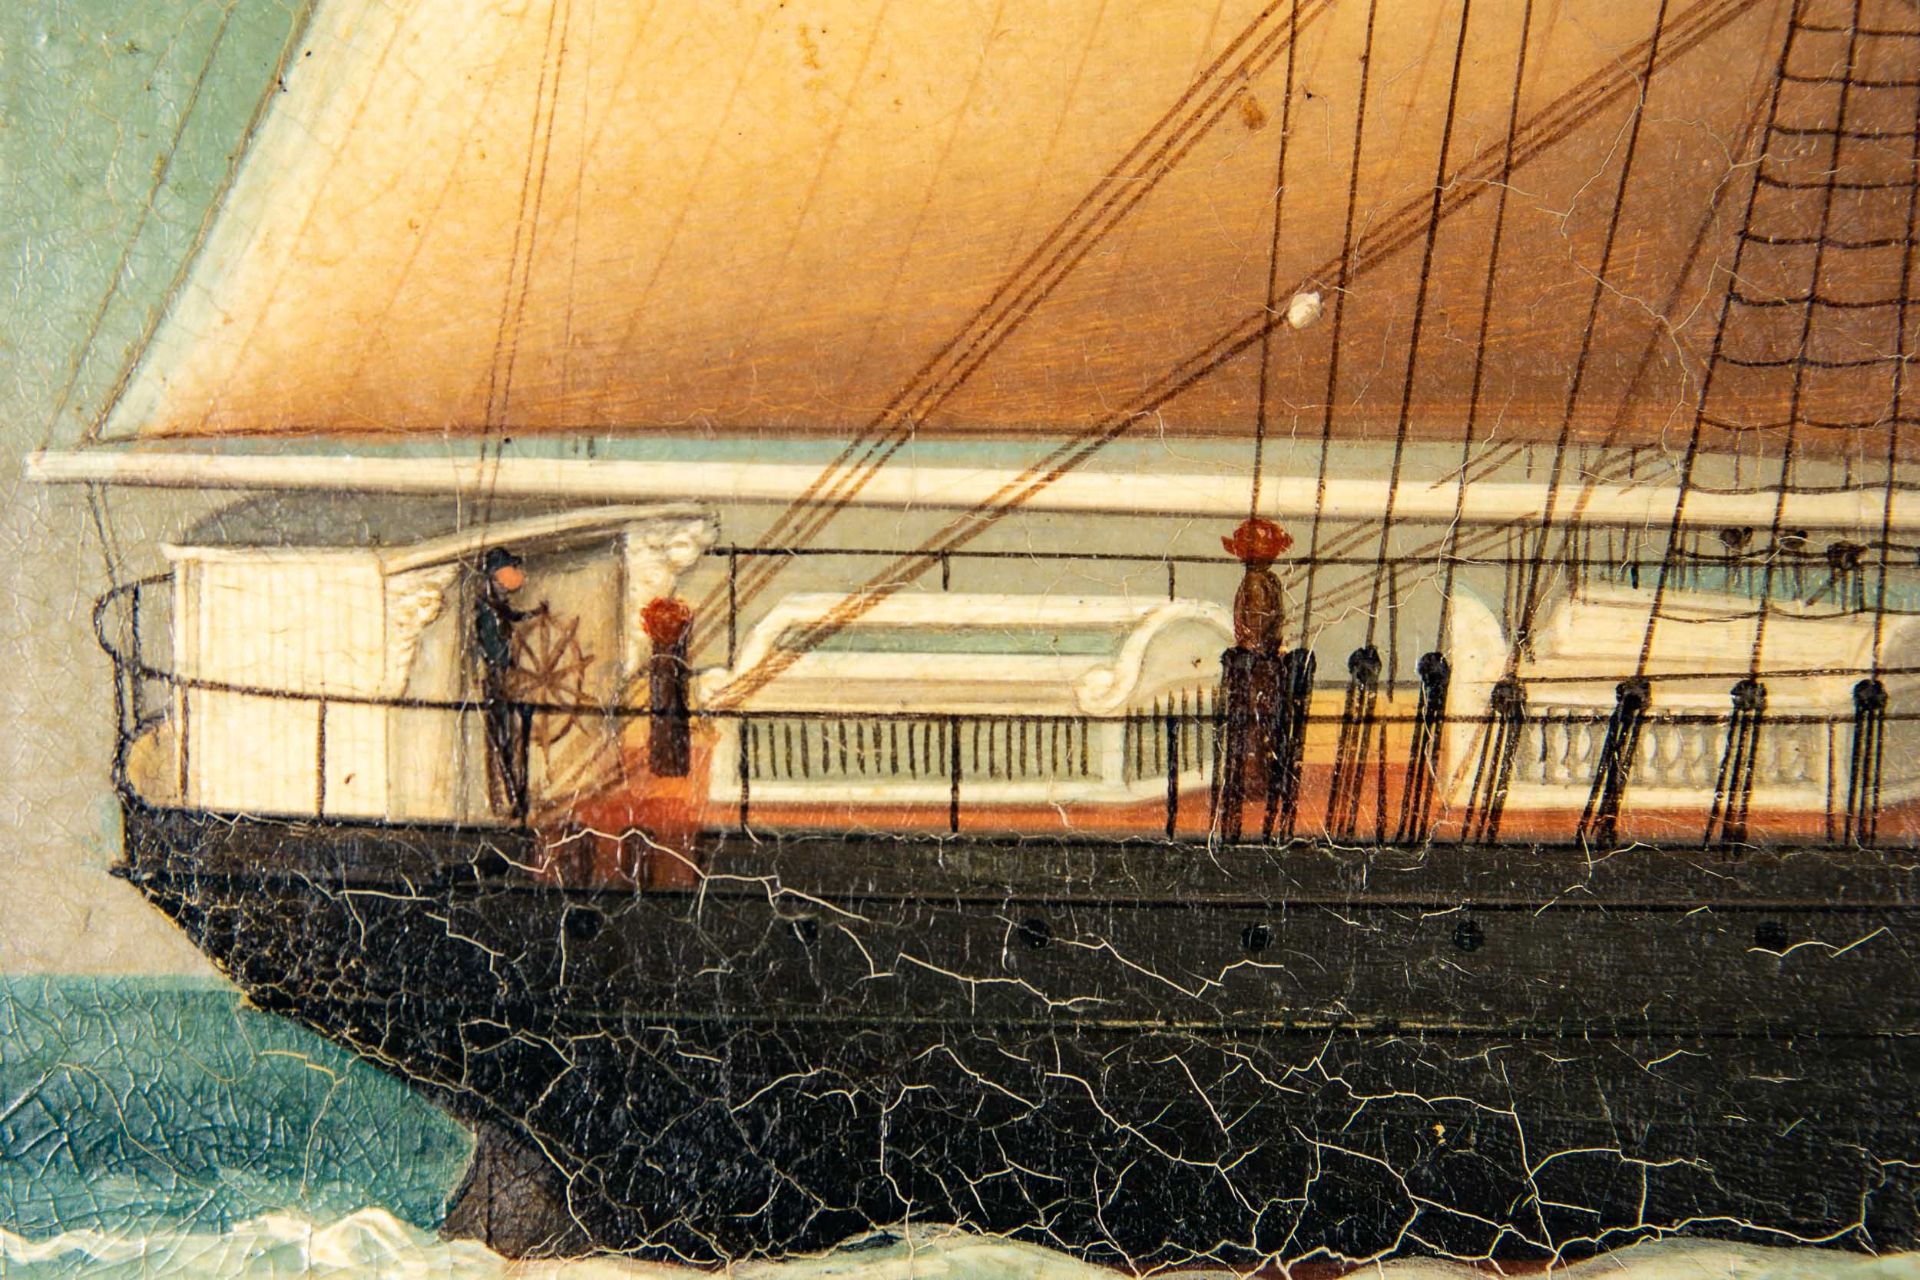 Kapitänsbild des Vollschiffes "Industrie" (1872 in Holland gebaut), qualitativ hochwertiges Gemälde - Image 13 of 24